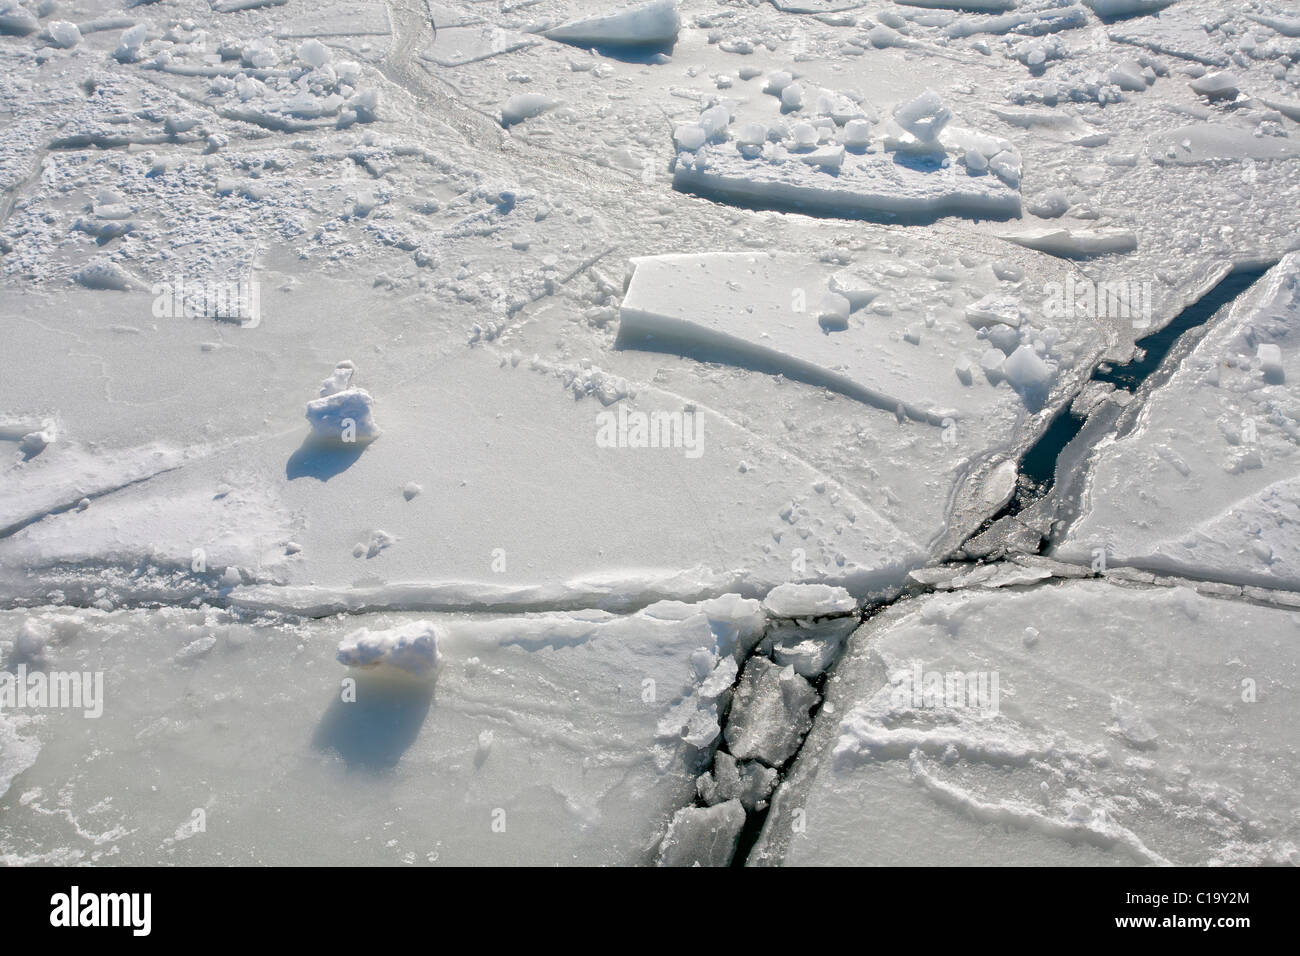 Fiche de fissures dans la glace, Helsinki Finlande Banque D'Images